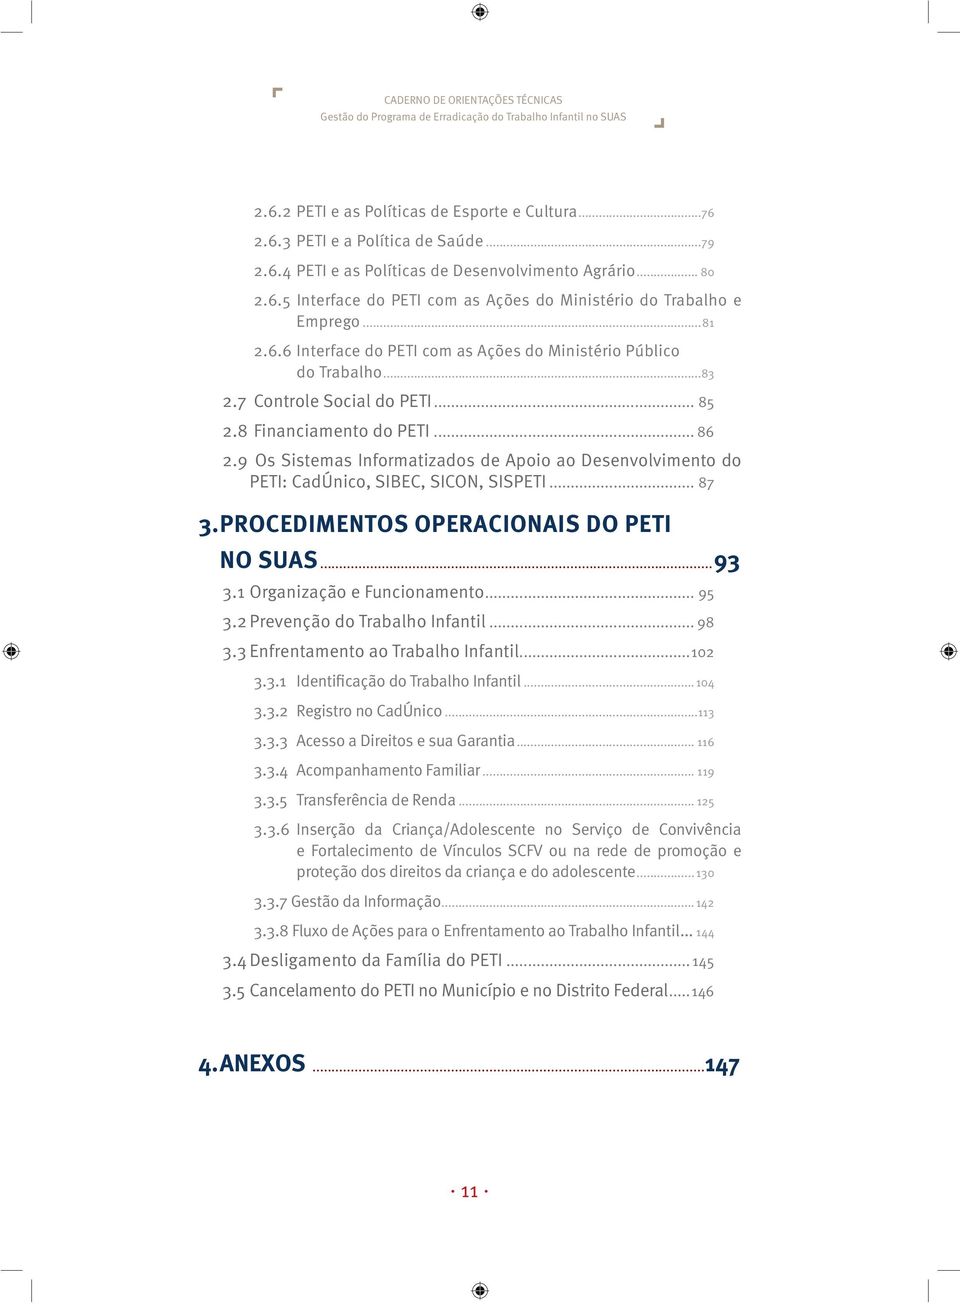 9 Os Sistemas Informatizados de Apoio ao Desenvolvimento do PETI: CadÚnico, SIBEC, SICON, SISPETI... 87 3. PROCEDIMENTOS OPERACIONAIS DO PETI NO SUAS...93 3.1 Organização e Funcionamento... 95 3.